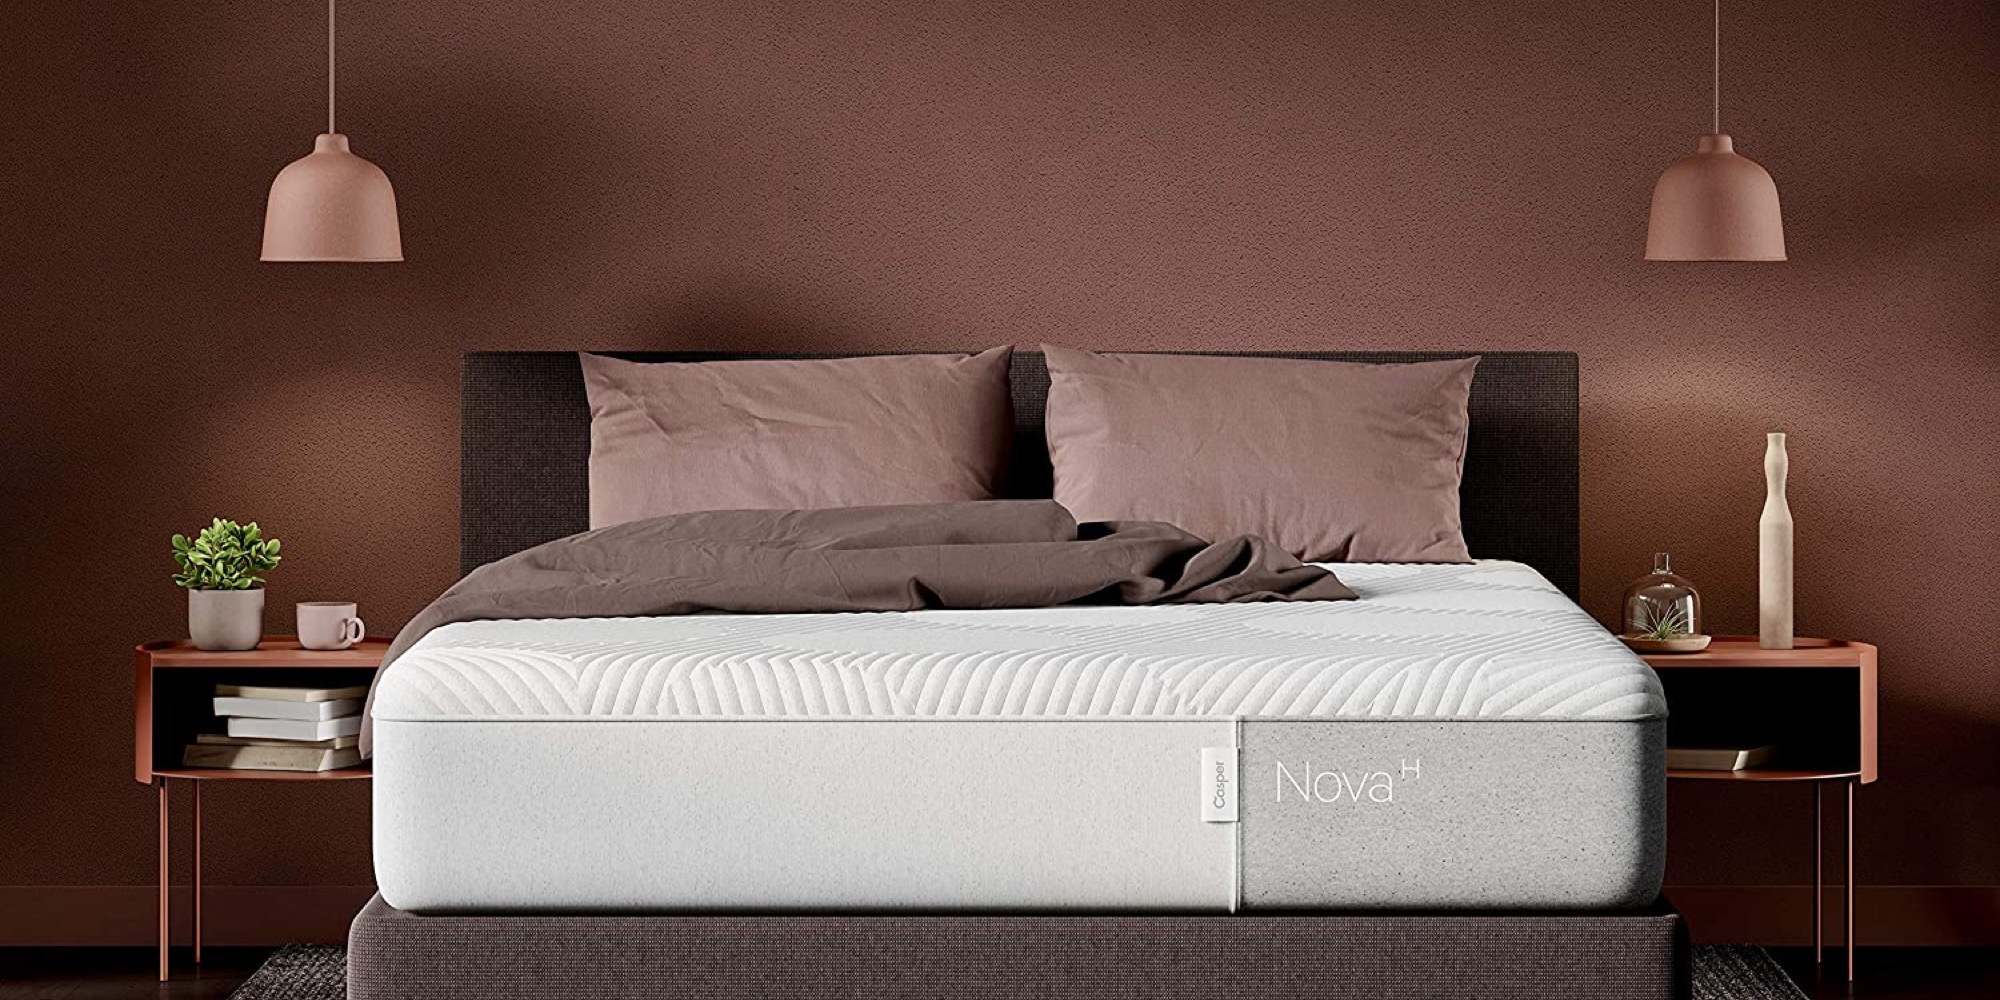 casper sleep original hybrid mattress reviews